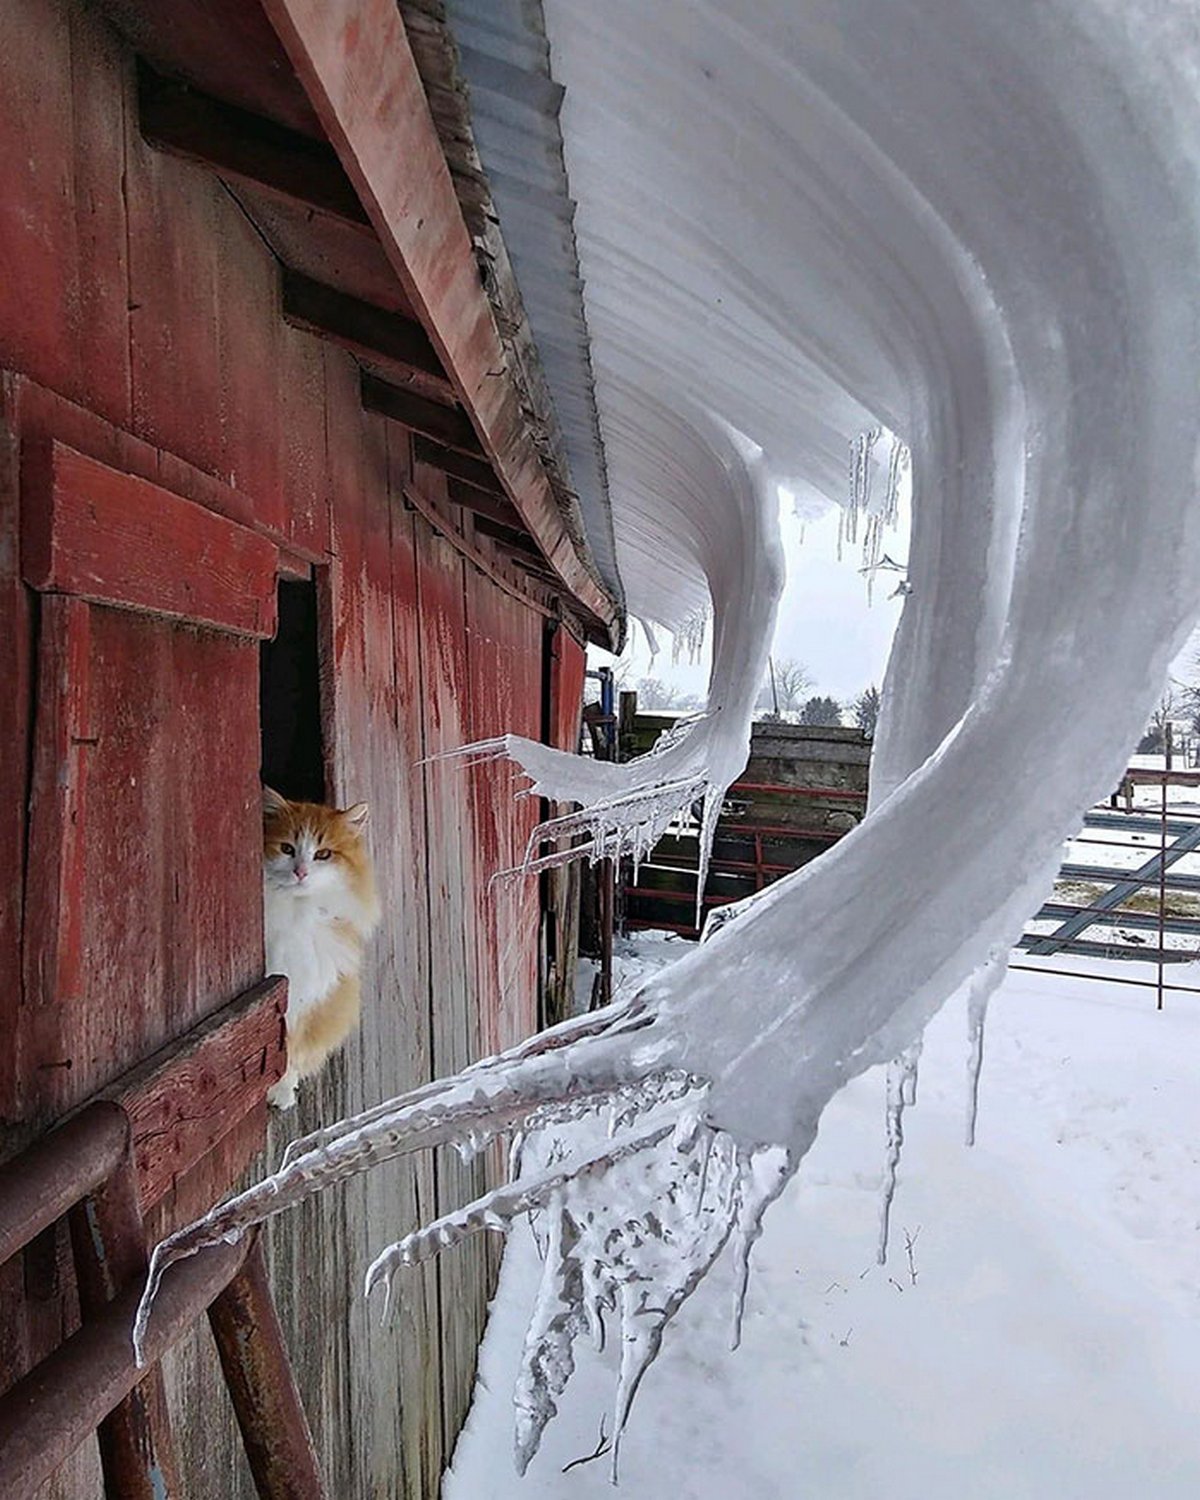 Ces photos d’hiver fascinantes montrent à quoi ressemble le vrai froid